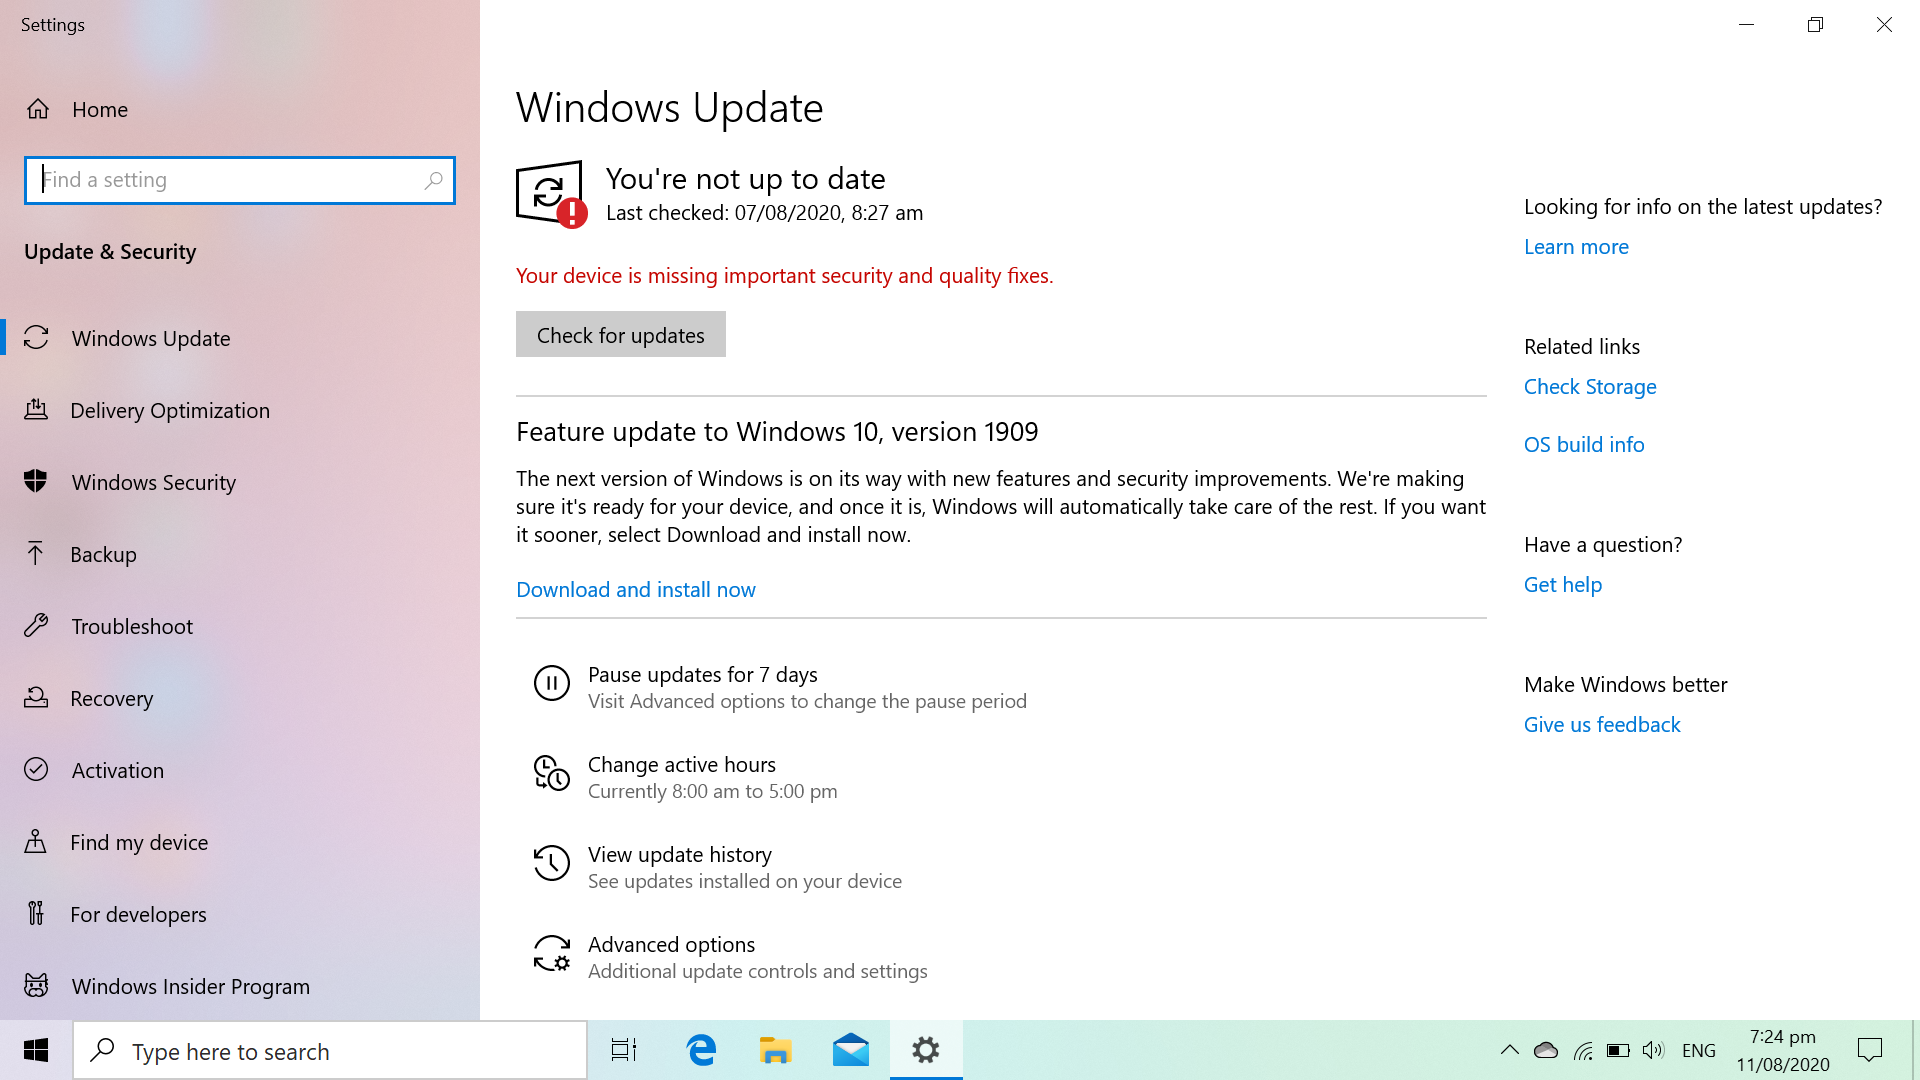 Windows update to ver. 1909 9c012995-dea8-4397-adca-30352e794b92?upload=true.png